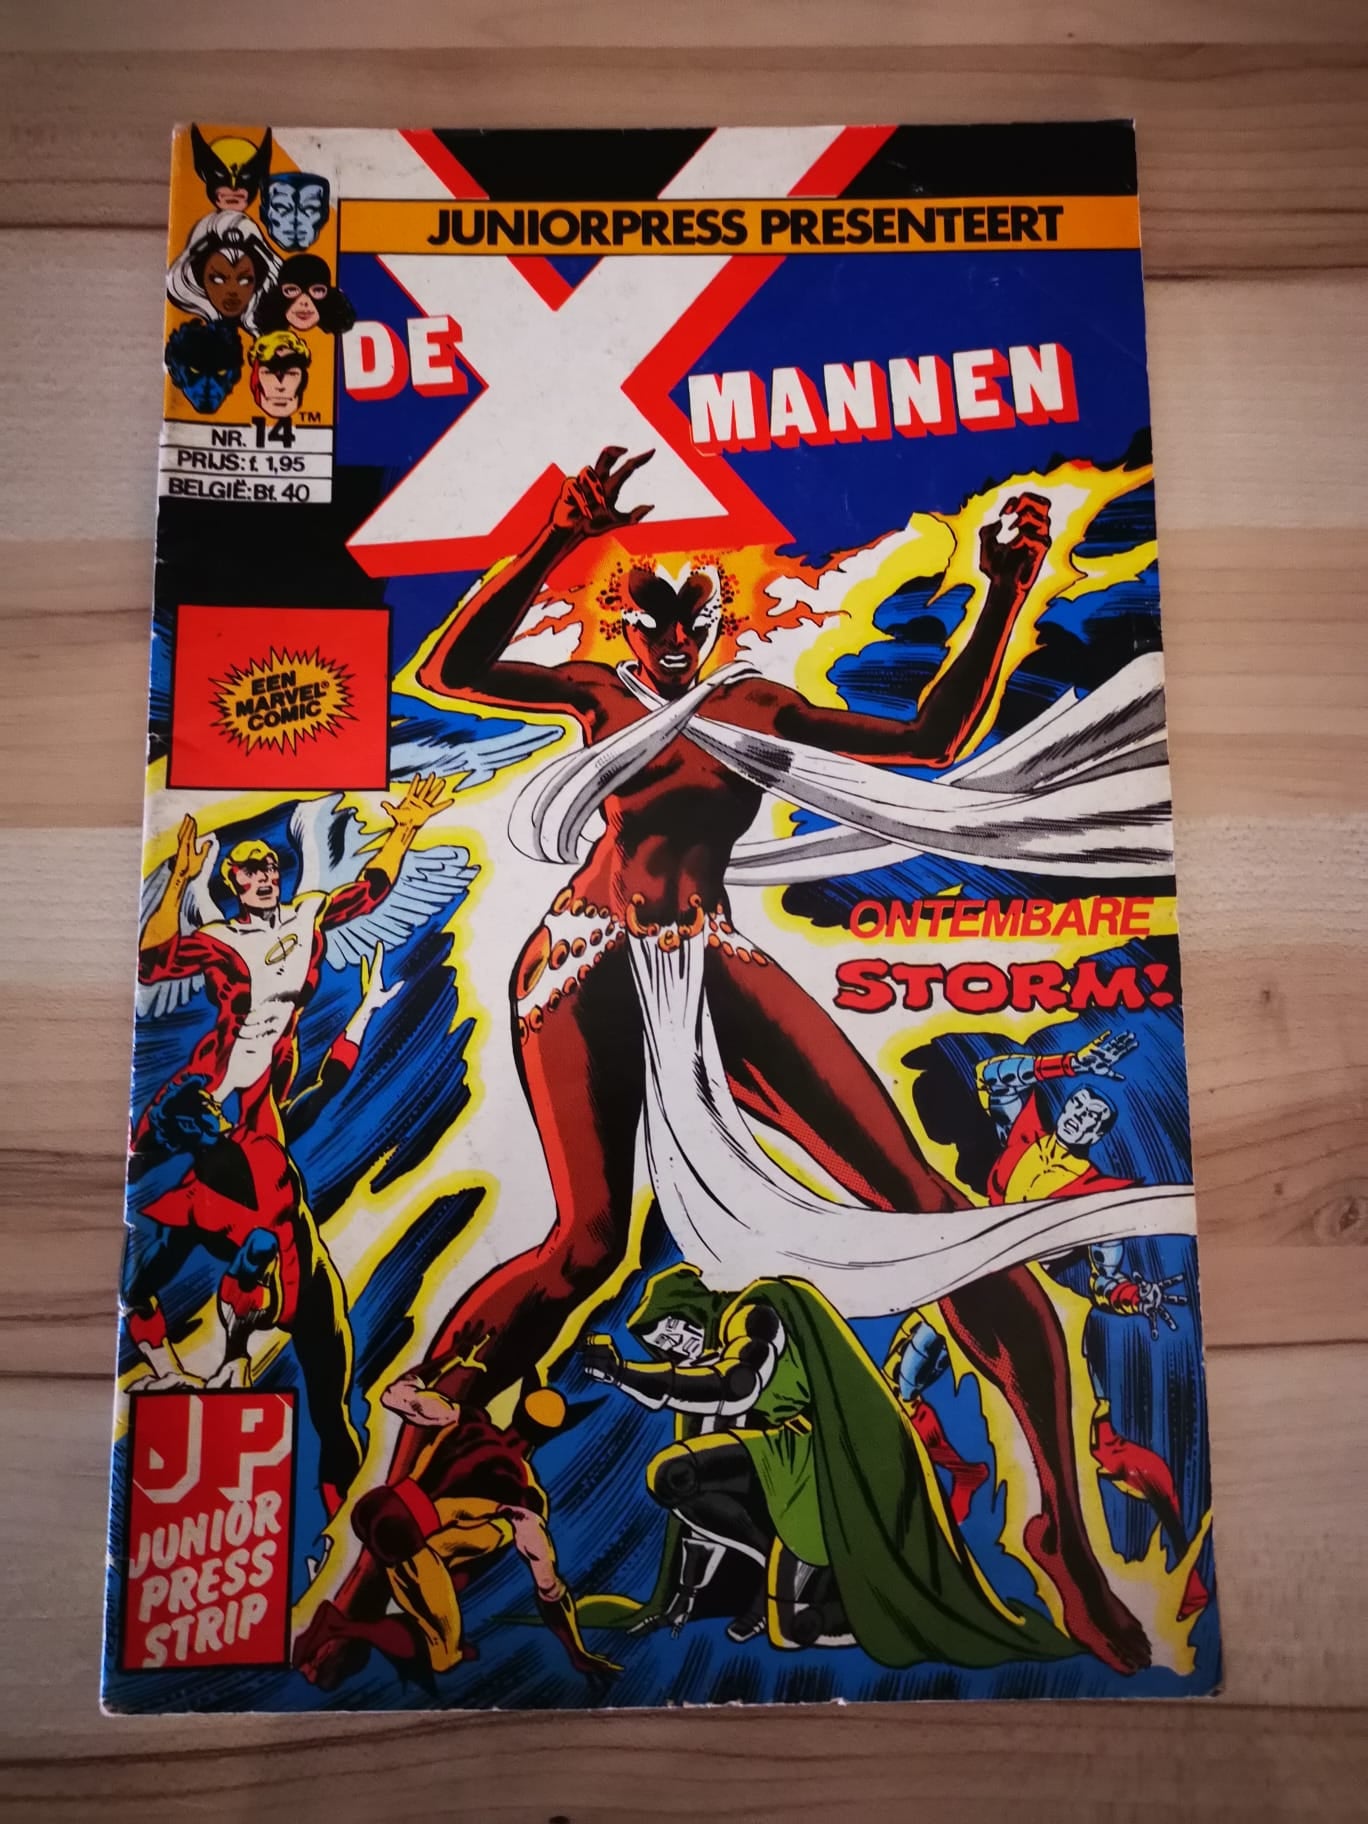 X-mannen #14